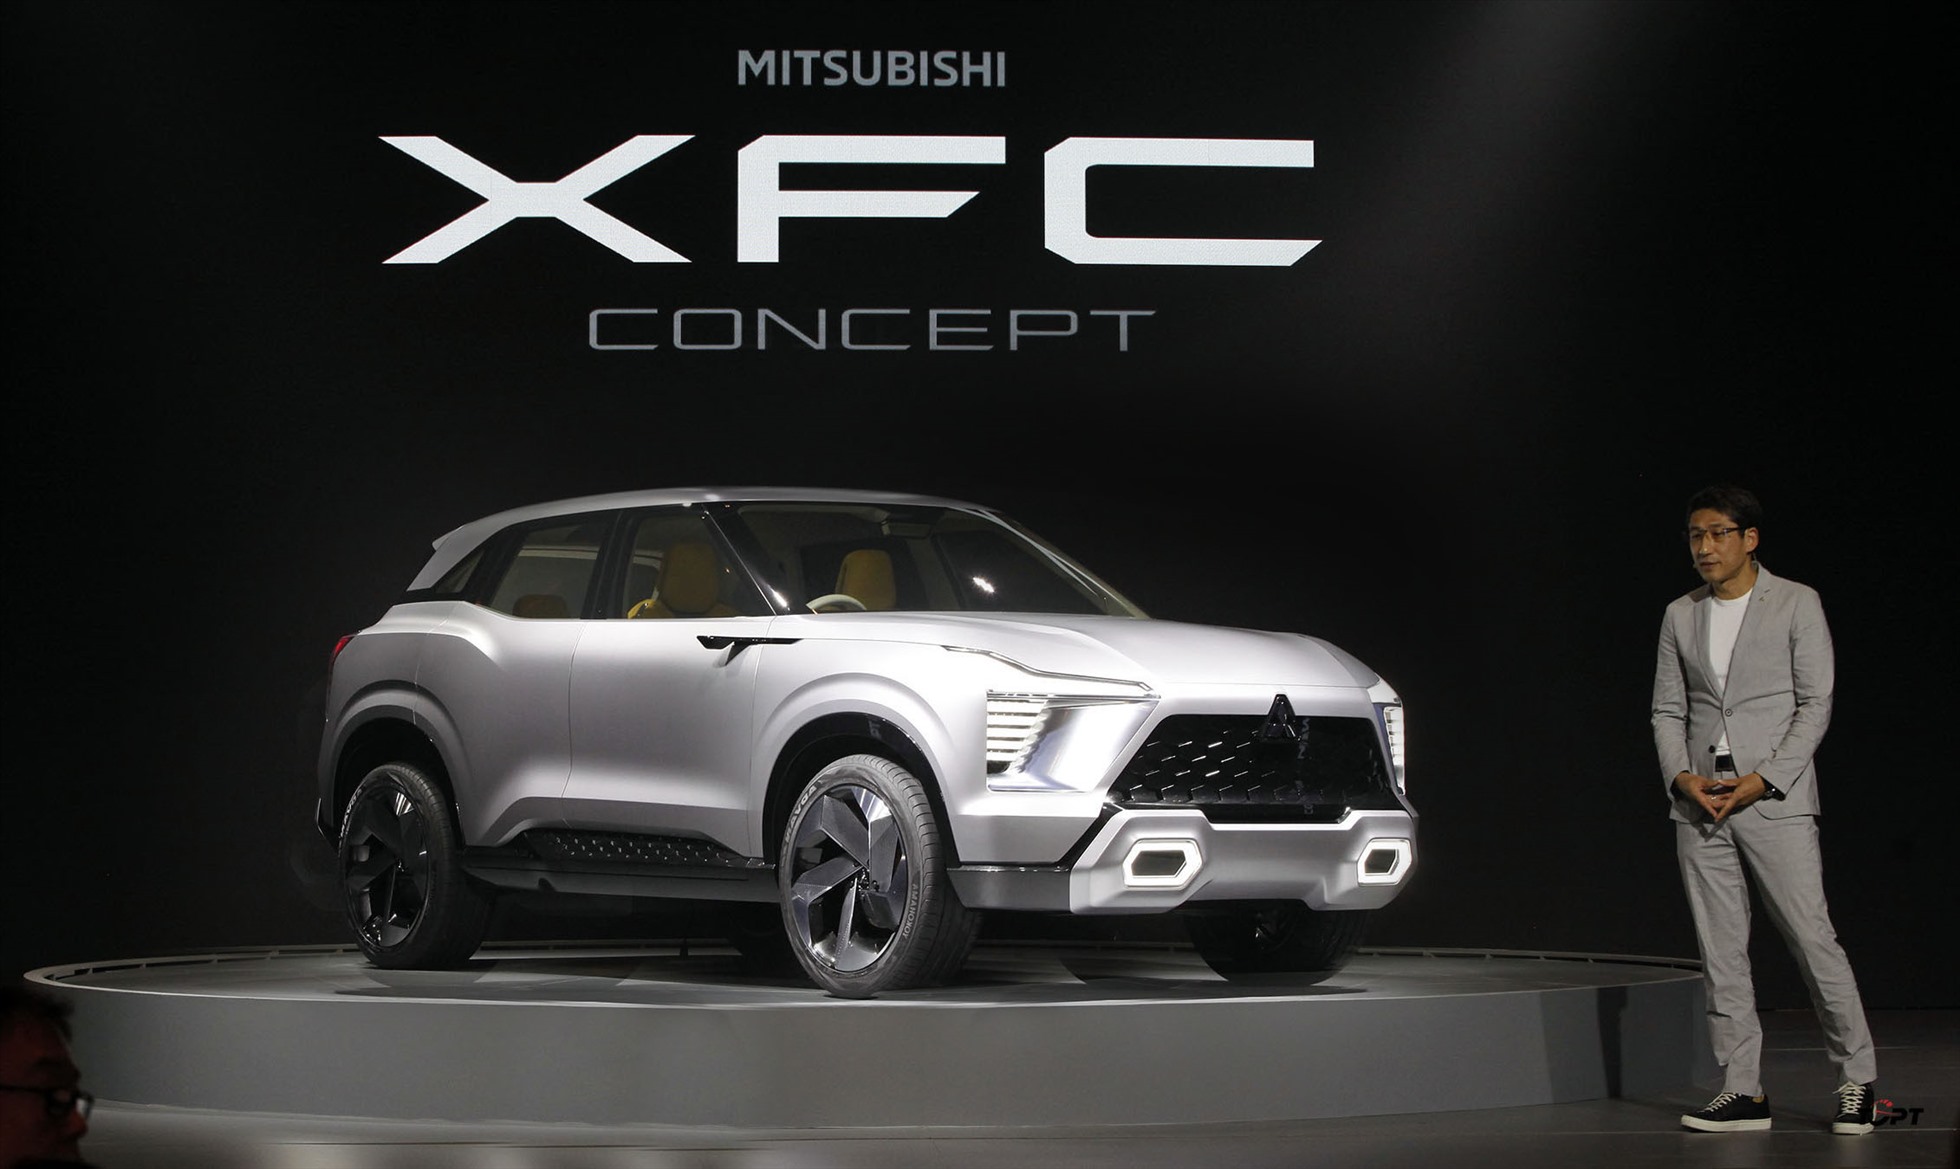 มิตซูบิชิ XFC รถแนวคิด  ภาพถ่าย: “Mitsubishi”